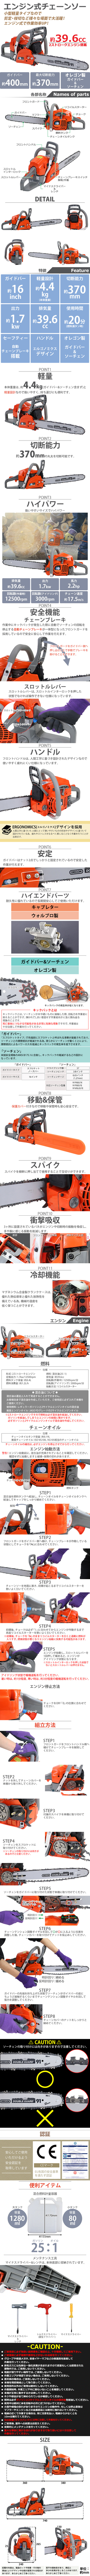 日本製特価送料無料 チェーンソー エンジン式 16インチ 最大切断径37cm 排気量約39.6cc 馬力2.2hp ハイグレードモデル 軽量 2ストロークエンジン チェーンソー